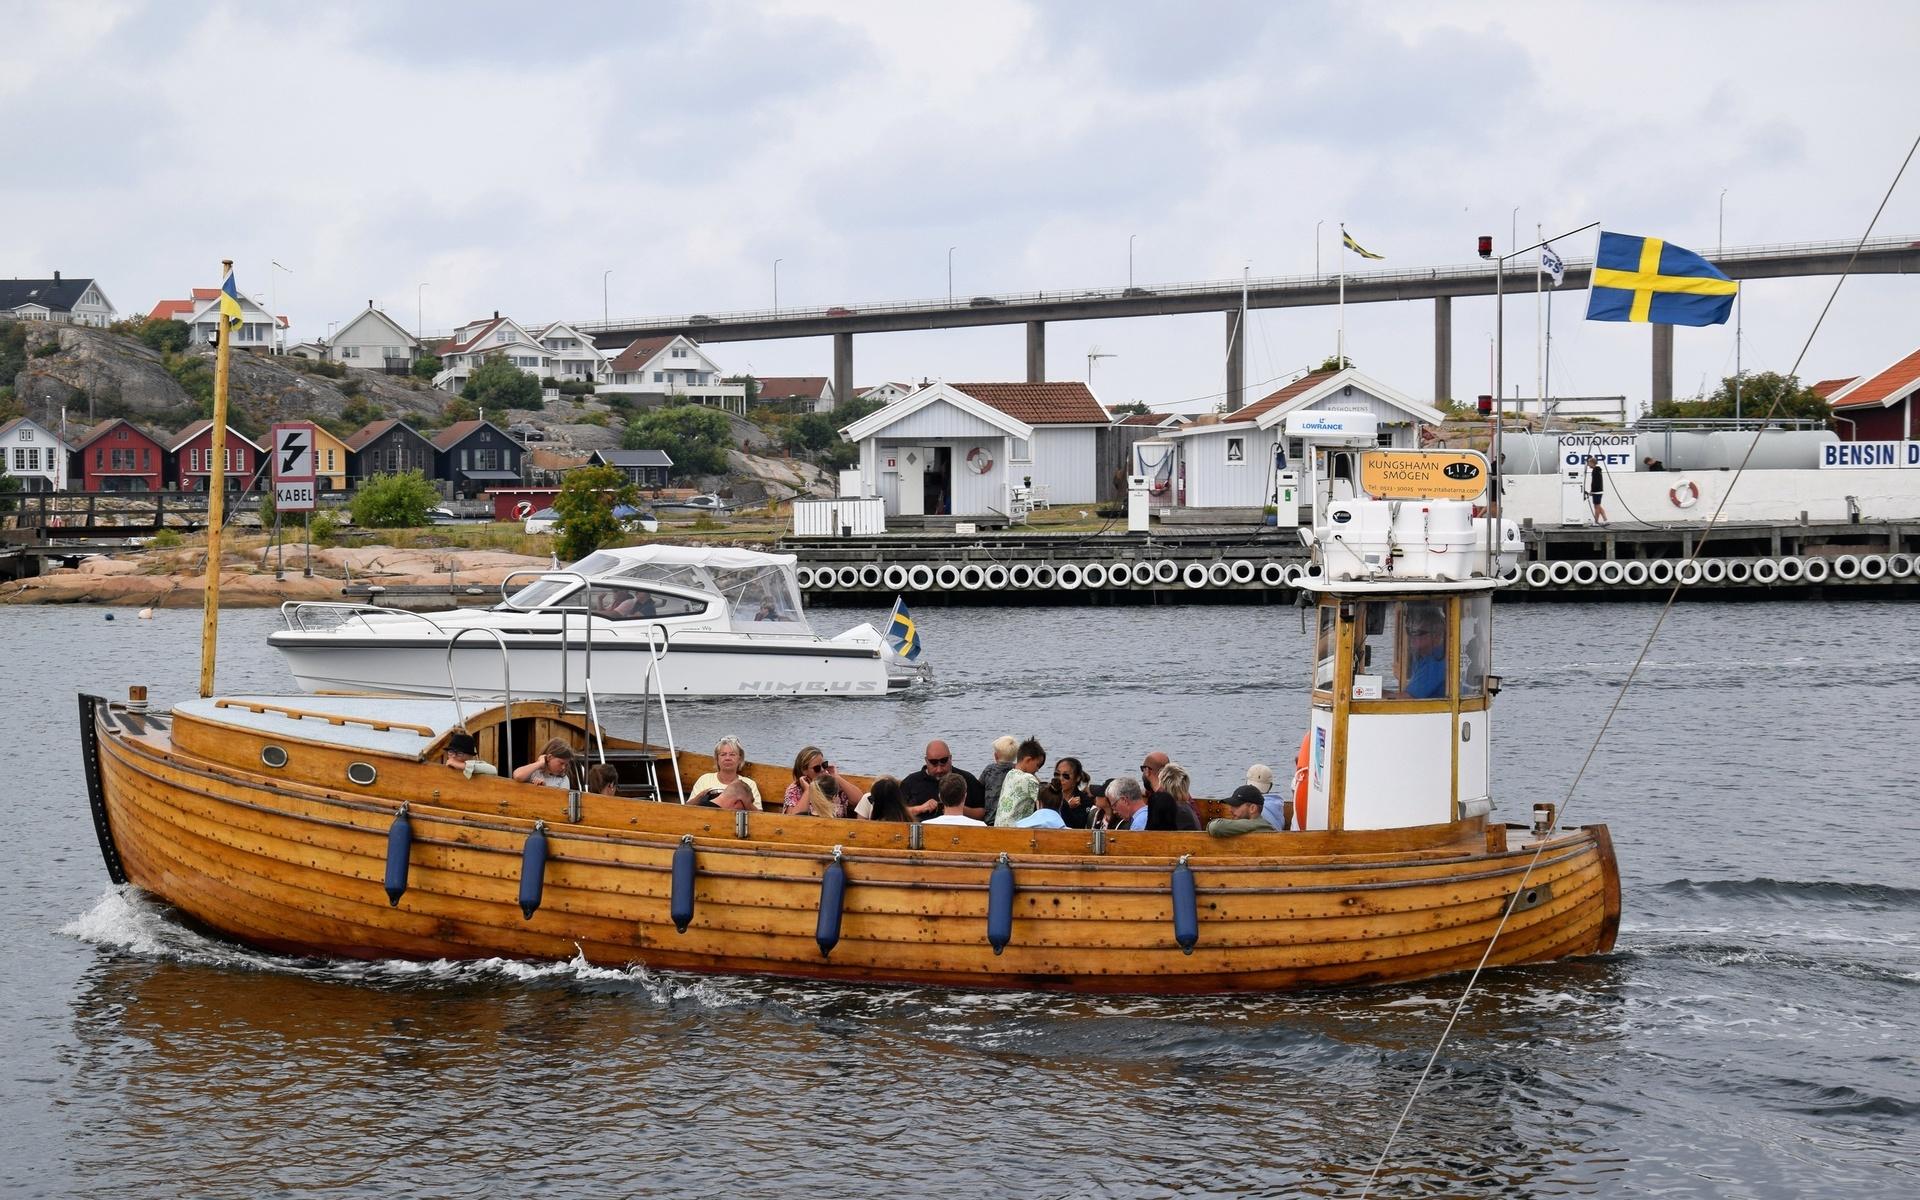 Den här Zitabåten som kör passagerare i Kungshamn är byggd av Båt-Jonas varv och Jonas Adolfsson i Henån